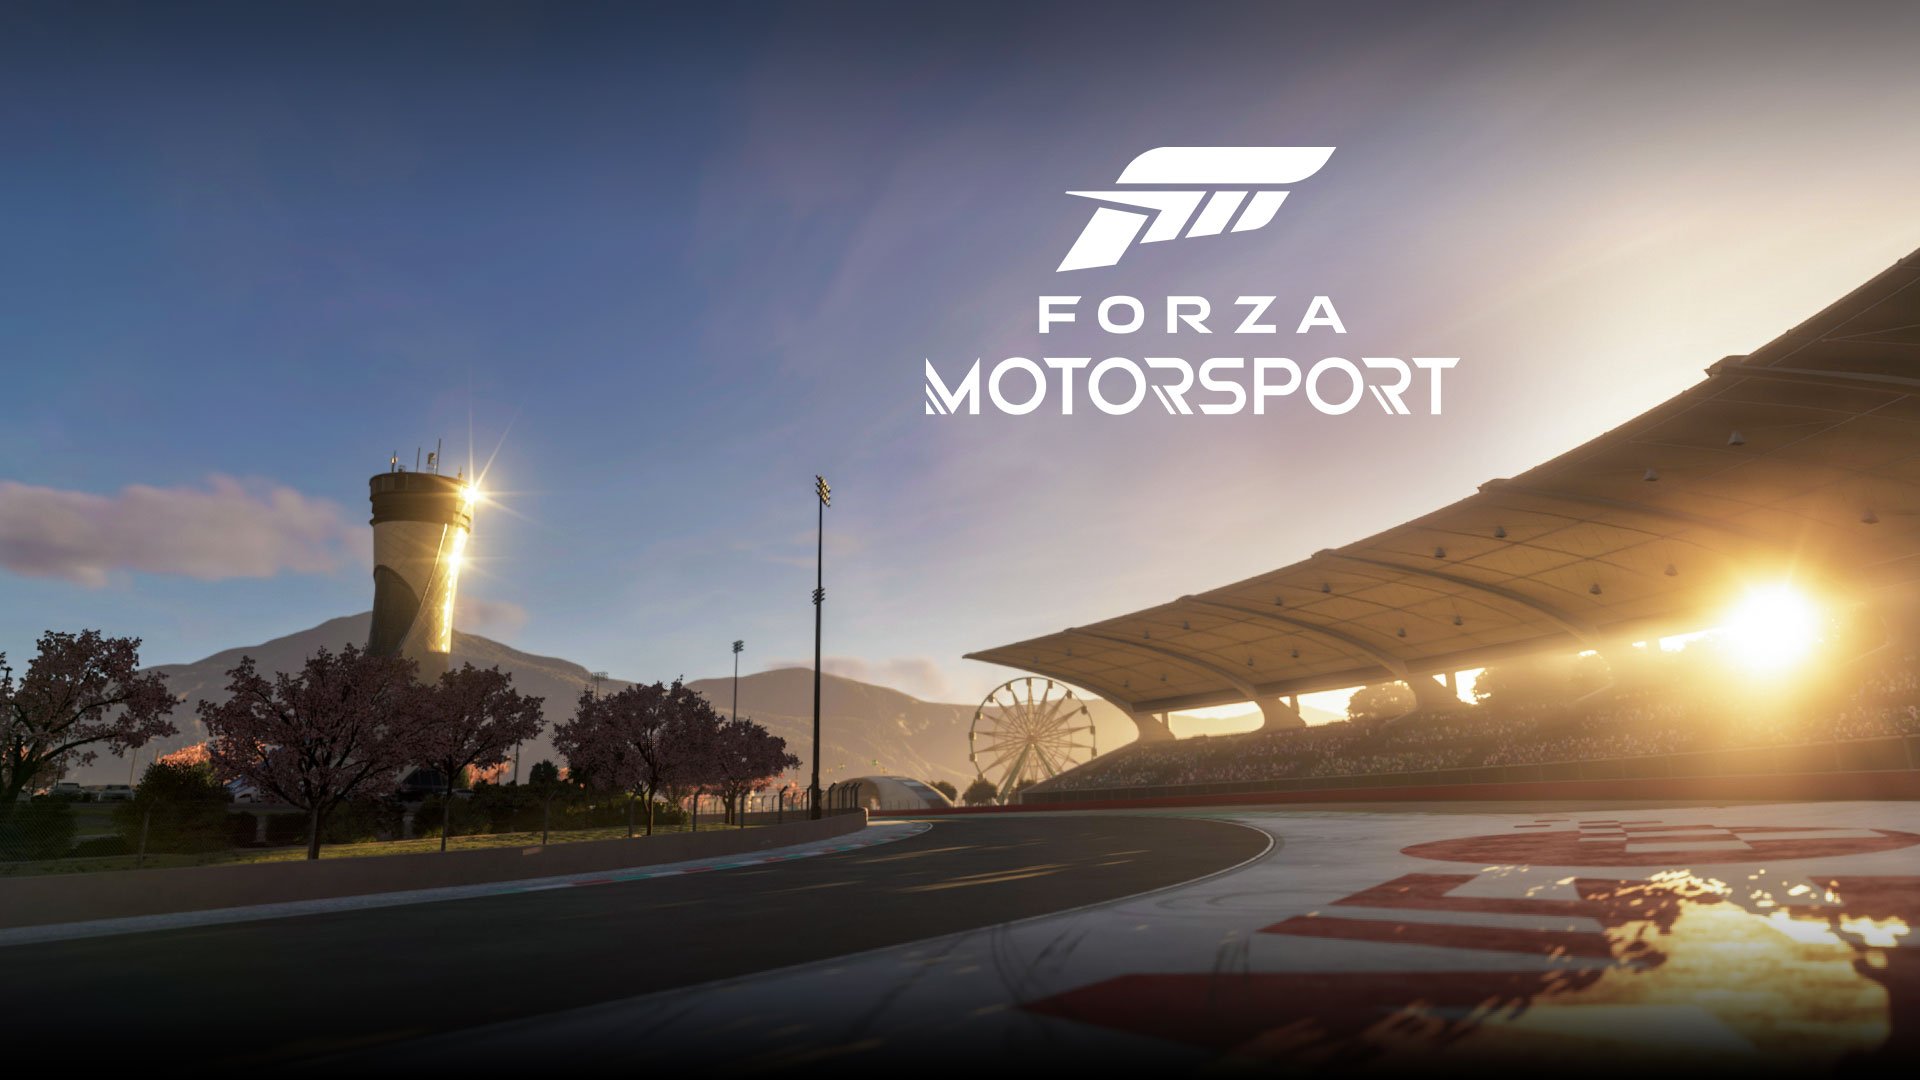 EXCLUSIVO: Forza Motorsport se lanza el 10 de octubre